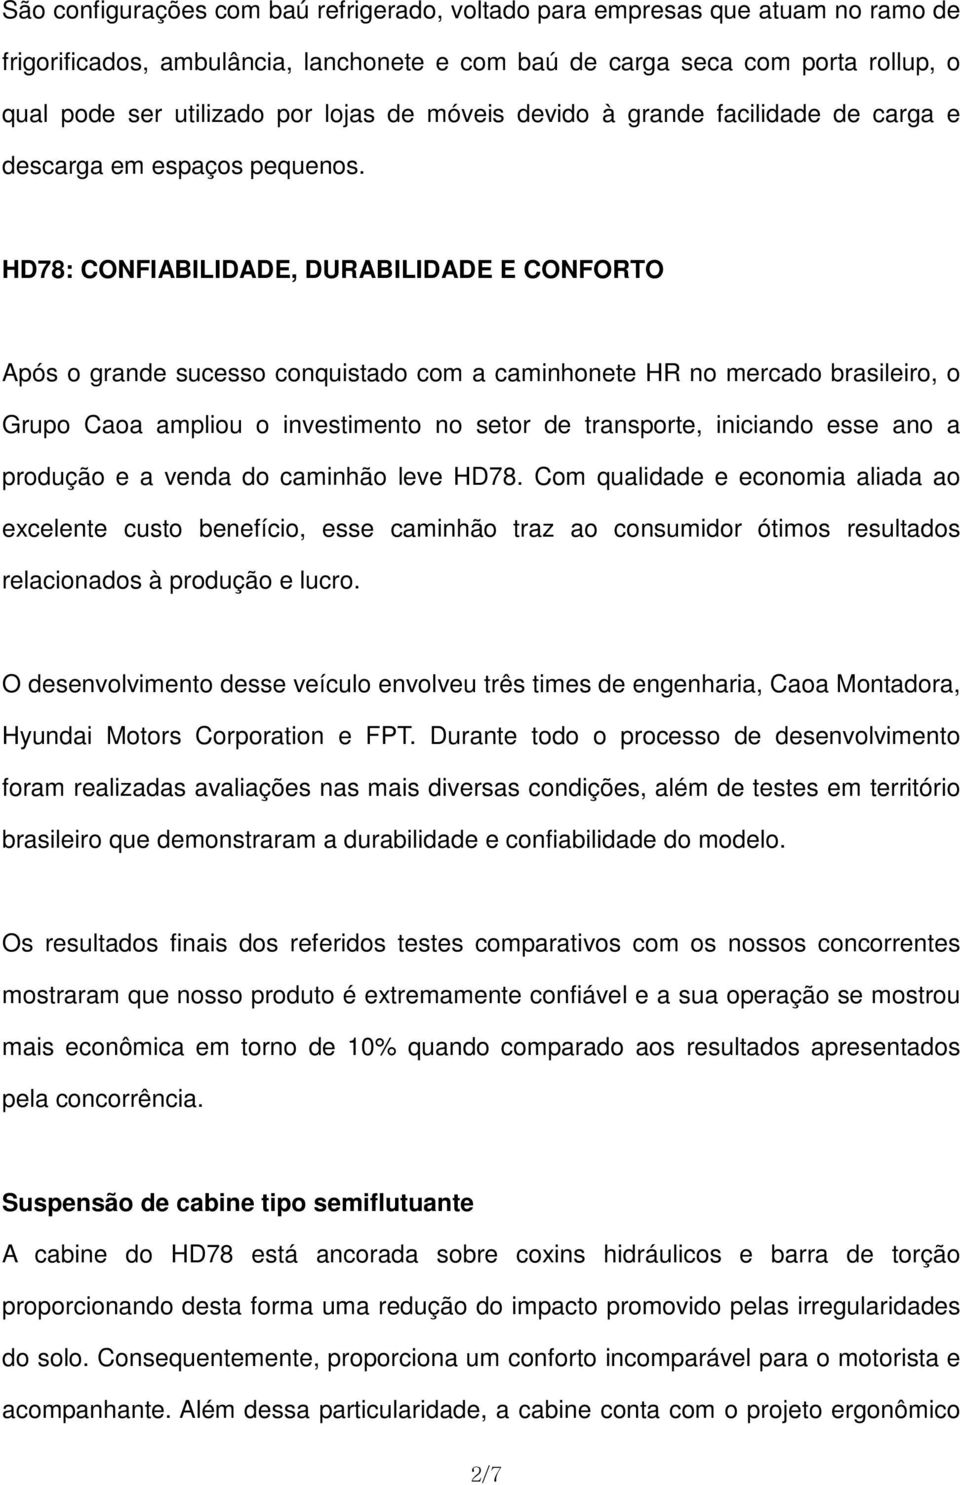 HD78: CONFIABILIDADE, DURABILIDADE E CONFORTO Após o grande sucesso conquistado com a caminhonete HR no mercado brasileiro, o Grupo Caoa ampliou o investimento no setor de transporte, iniciando esse